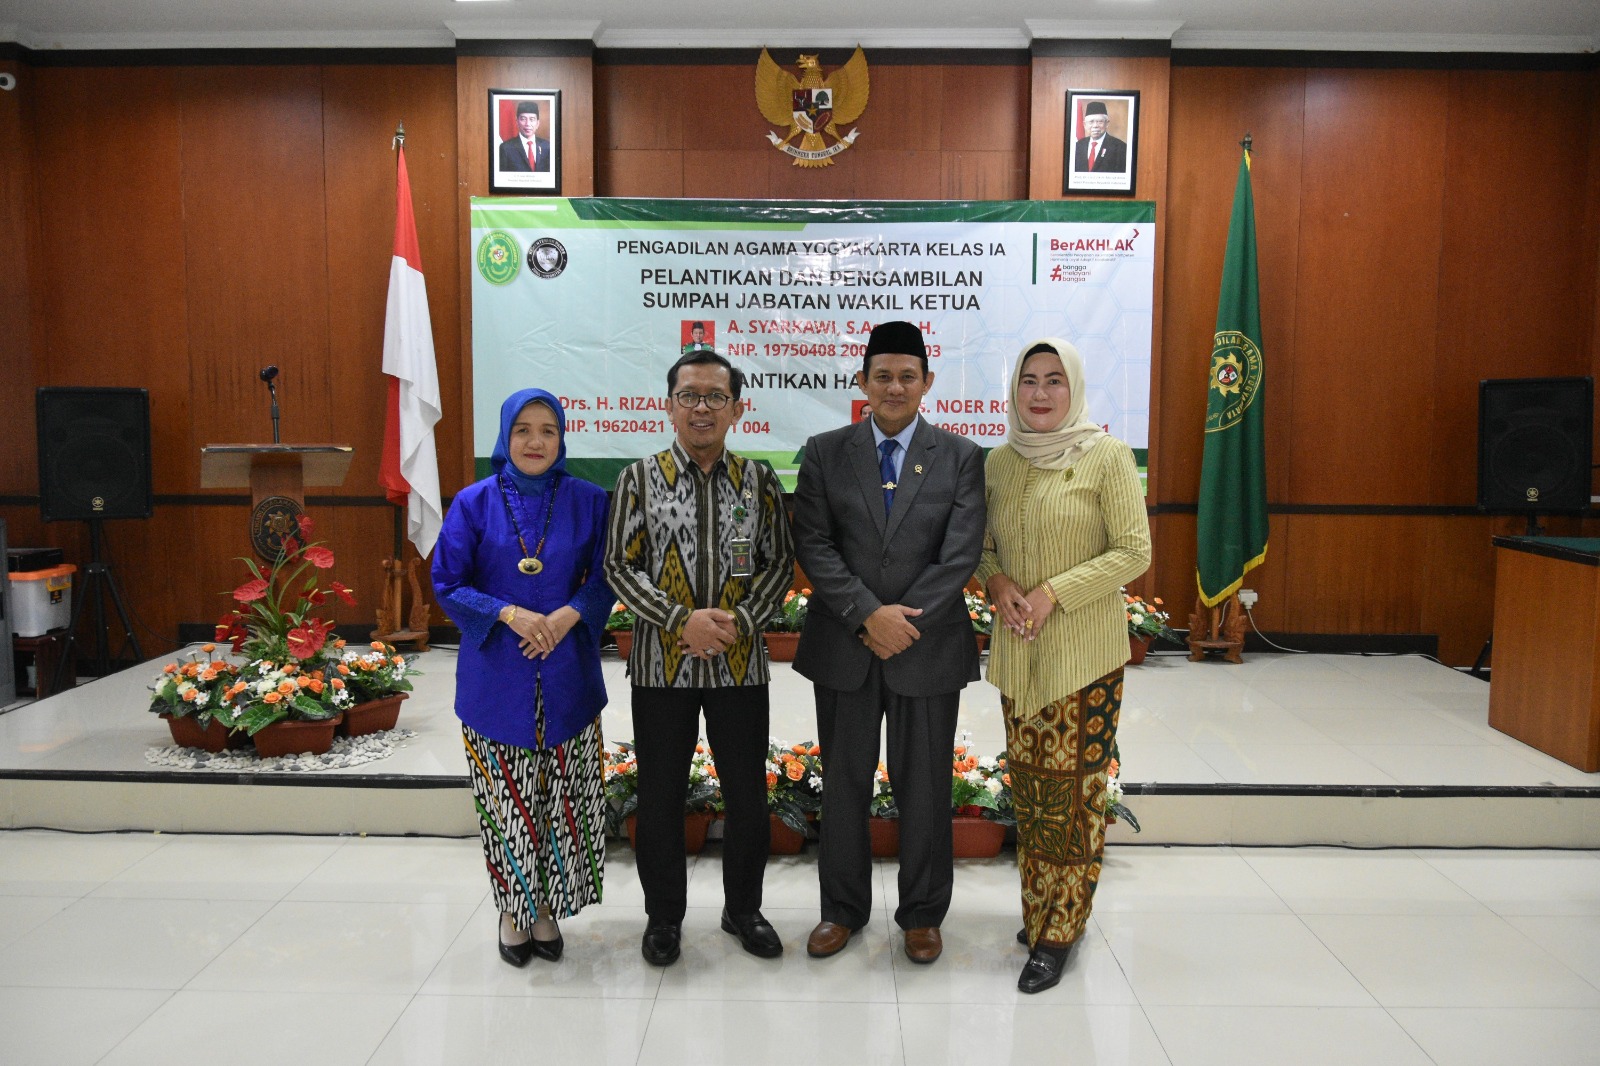 Ketua Pengadilan Negeri Yogyakarta Menghadiri Pelantikan dan Pengambilan Sumpah Jabatan Wakil Ketua Pengadilan Agama Yogyakarta 